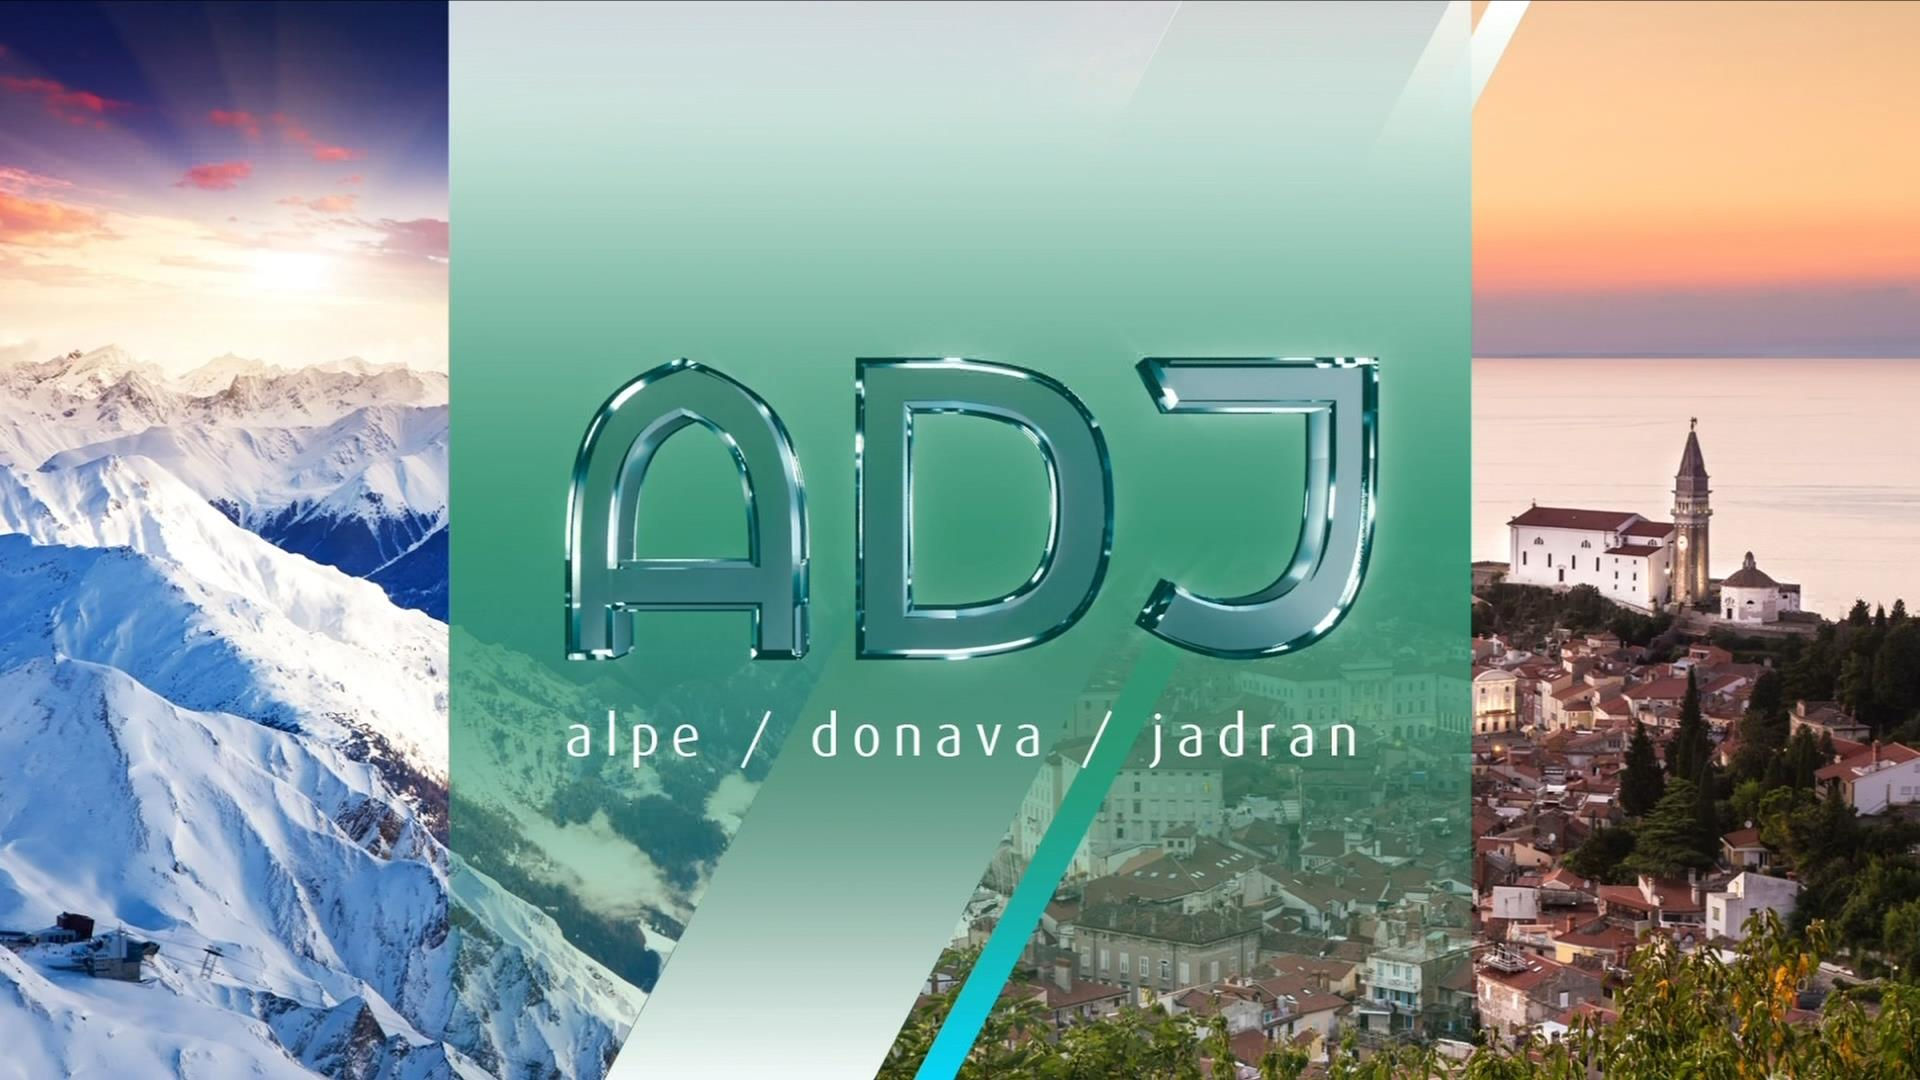 Alpe-Donava-Jadran, ponovitev